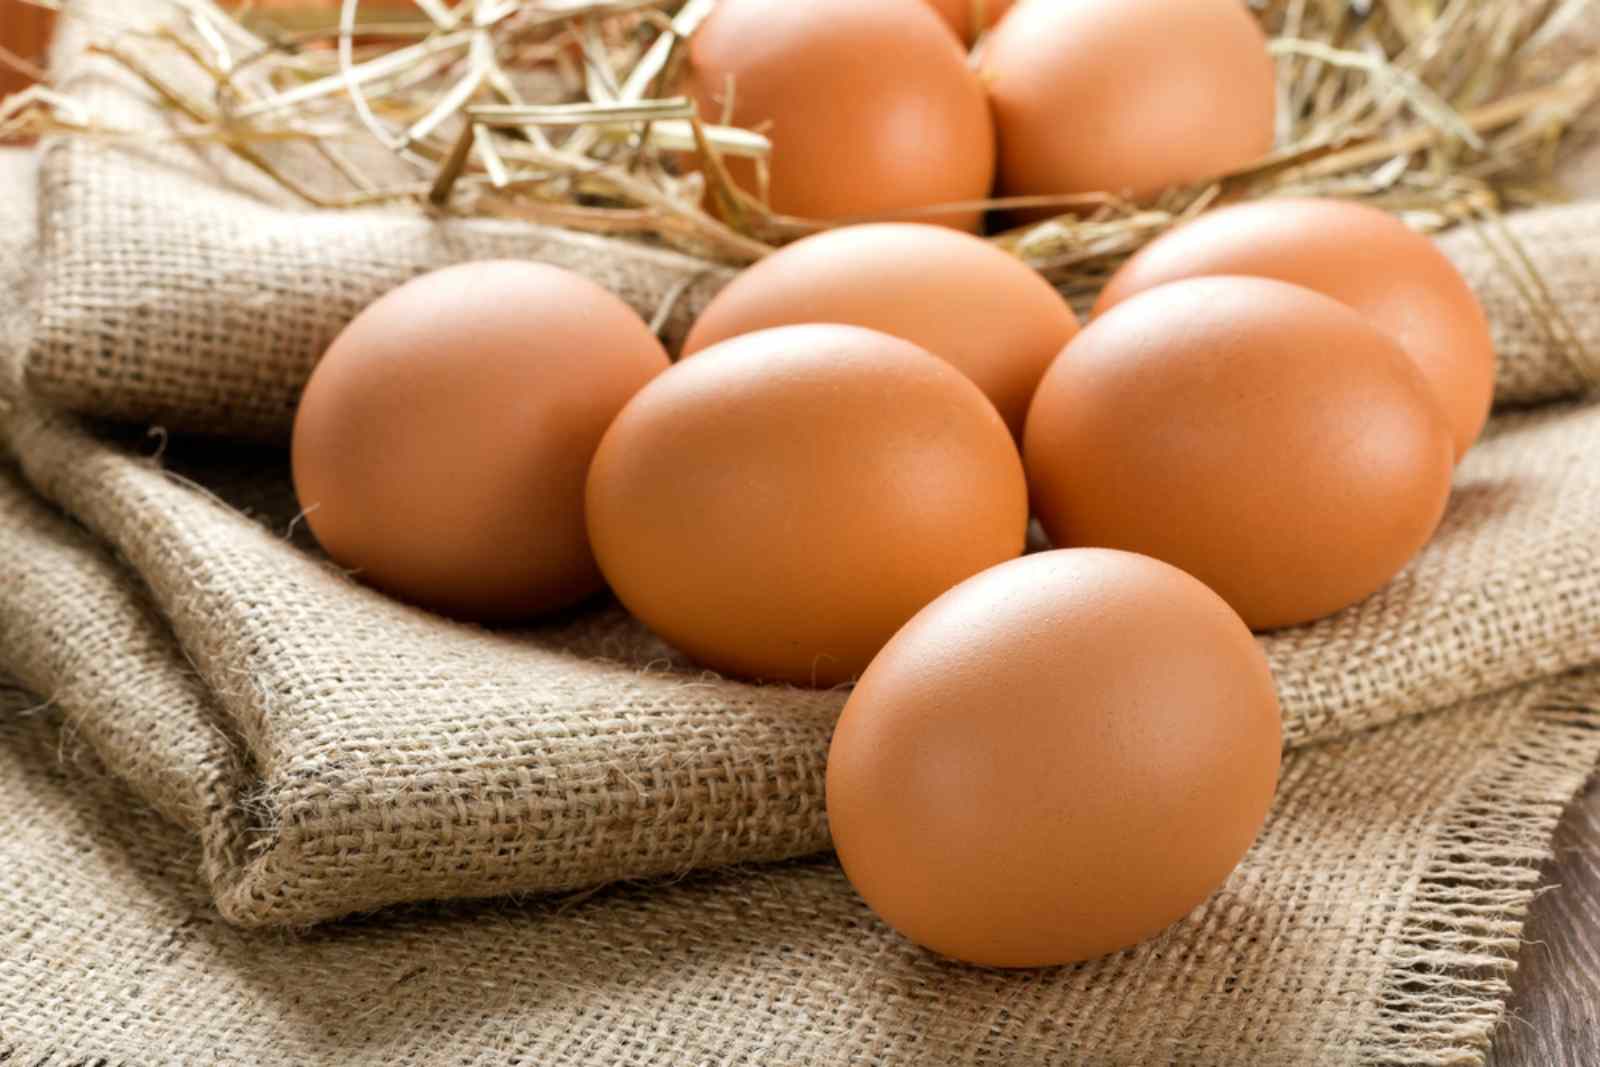 Trứng gà là một trong những thực phẩm tốt cho bé trong thời kỳ ăn dặm